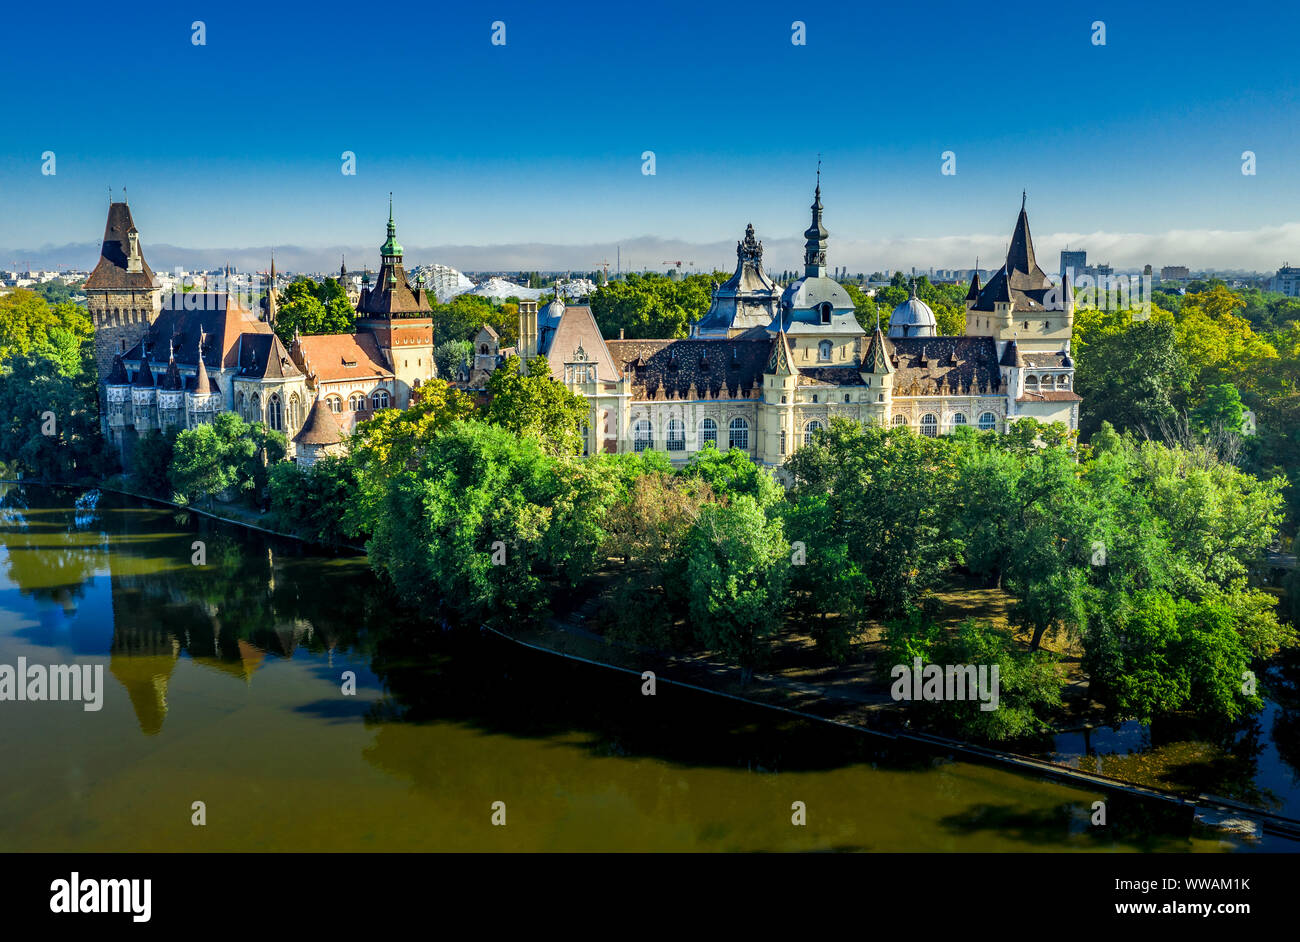 Vue aérienne du château de Vajdahunyad Varosliget dans près de la Place des Héros à Budapest Hongrie Banque D'Images